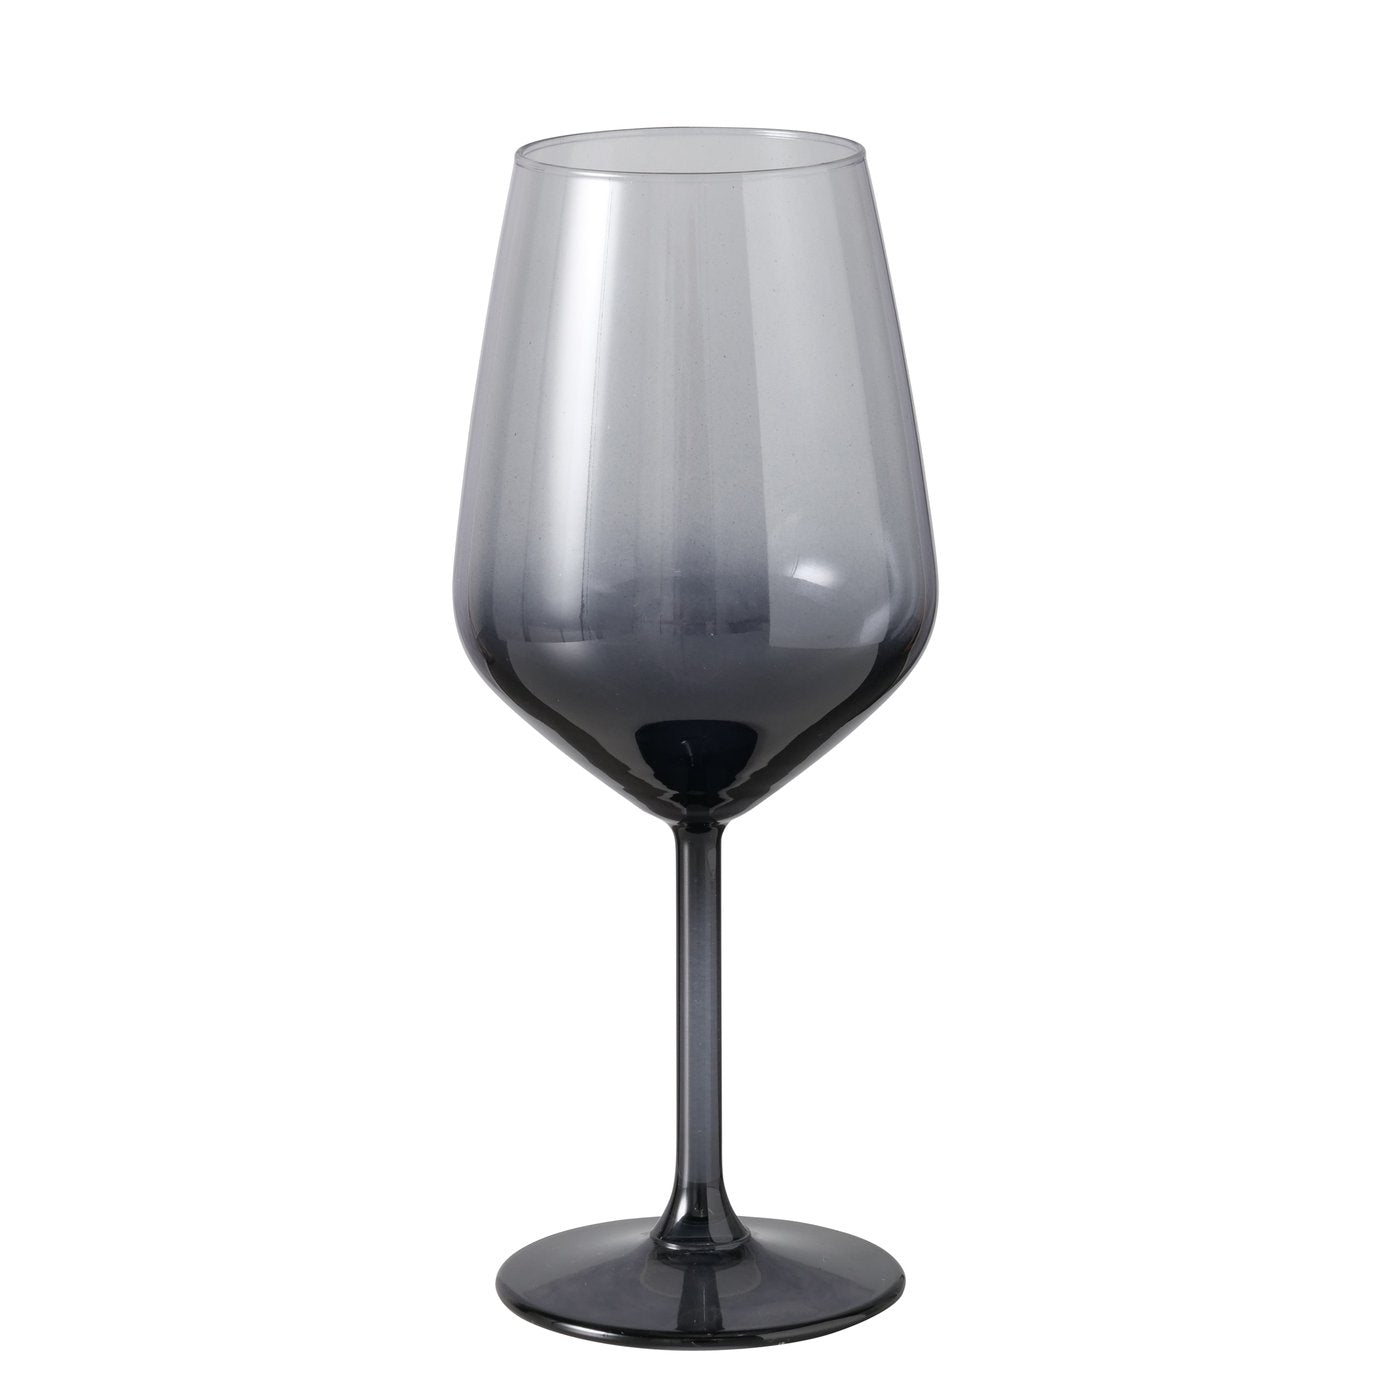 Moluna wine glass